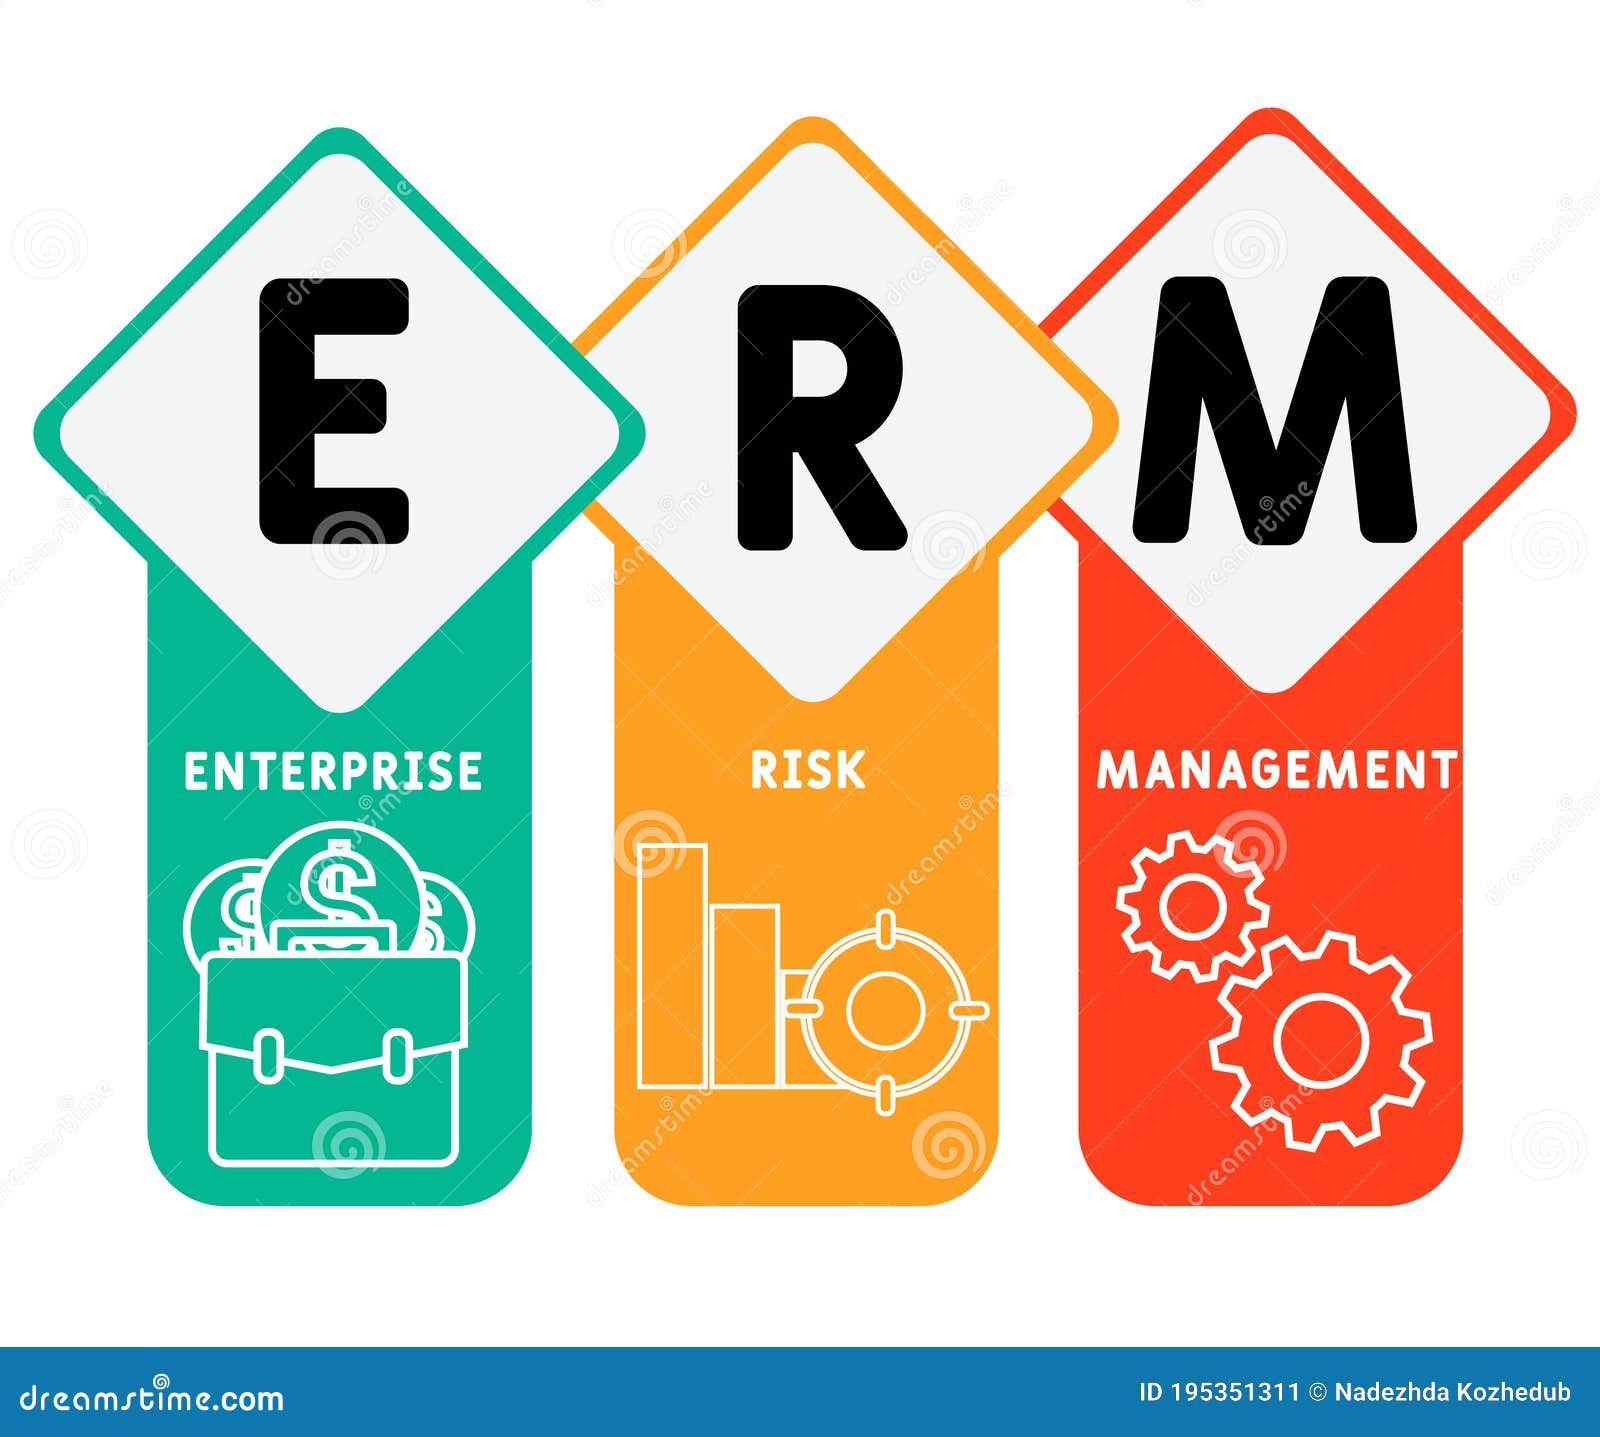  مدیریت ریسک سازمانی یا ERM چیست؟